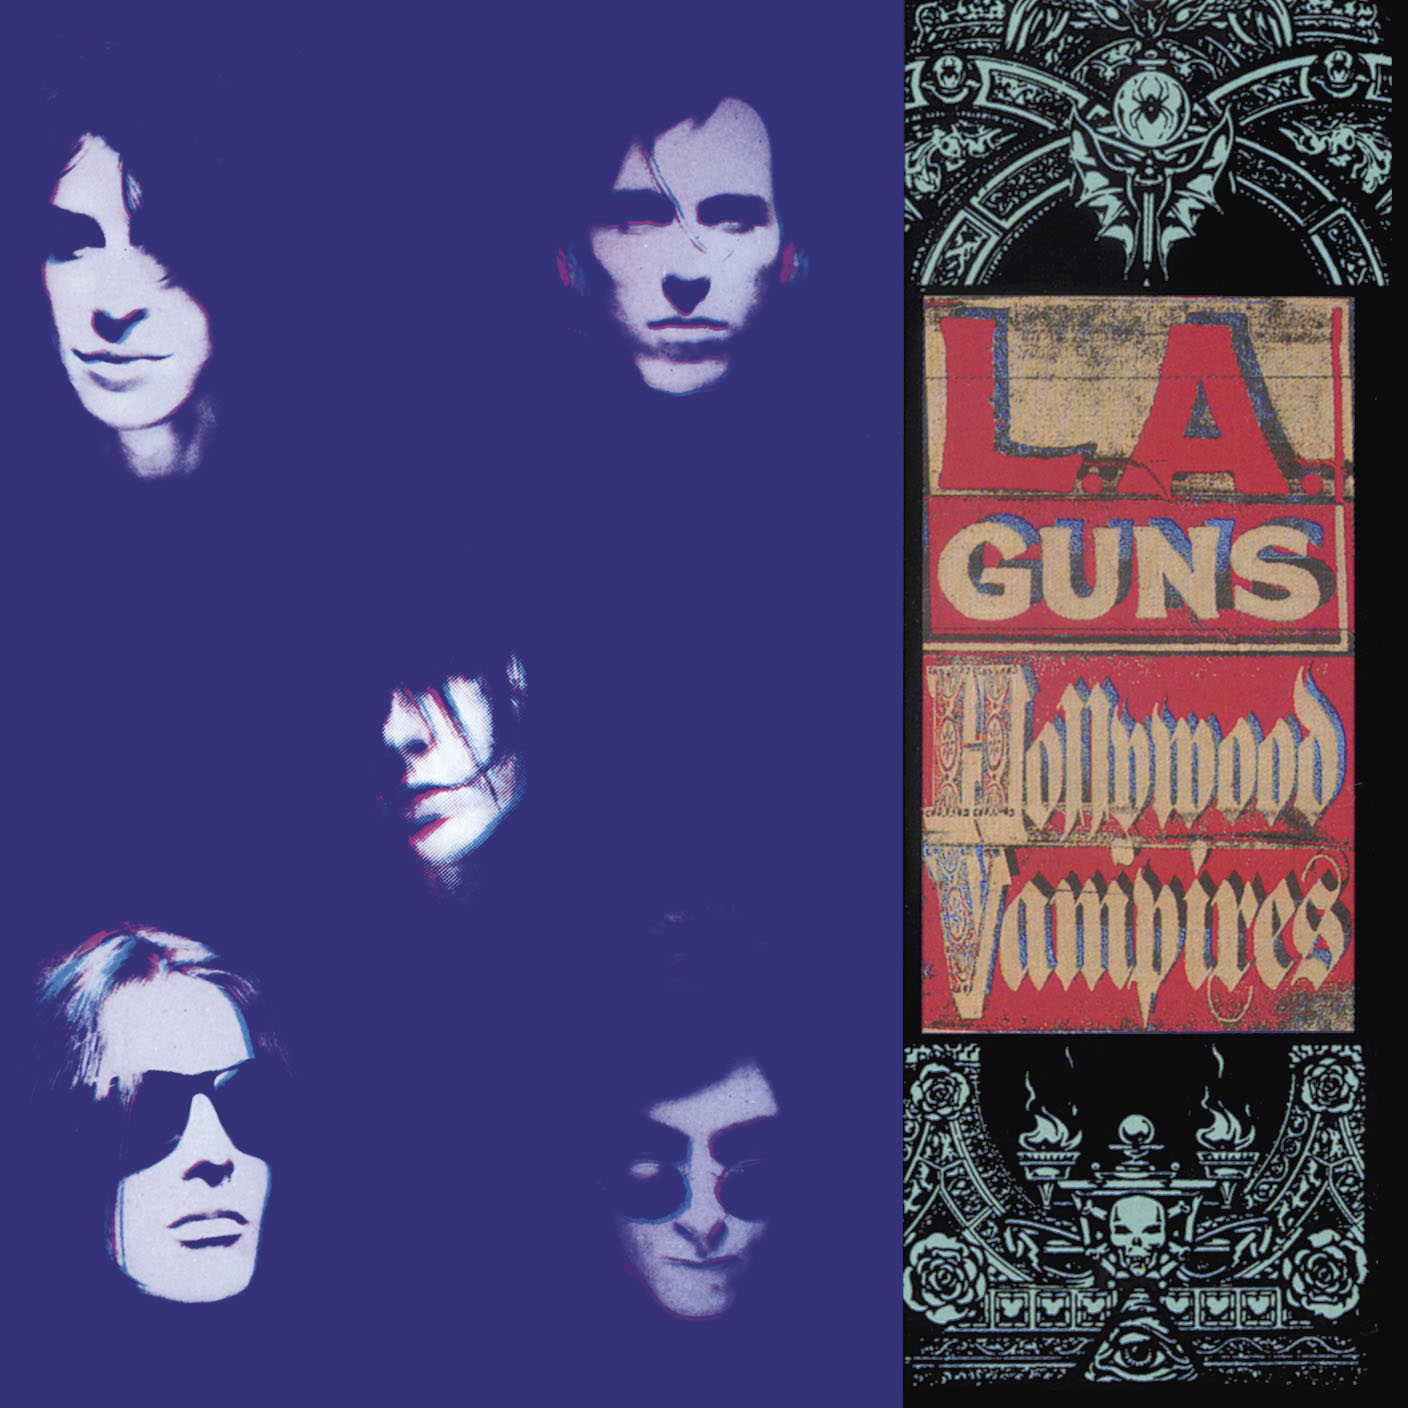 L.A. GUNS - Hollywood vampires - CD